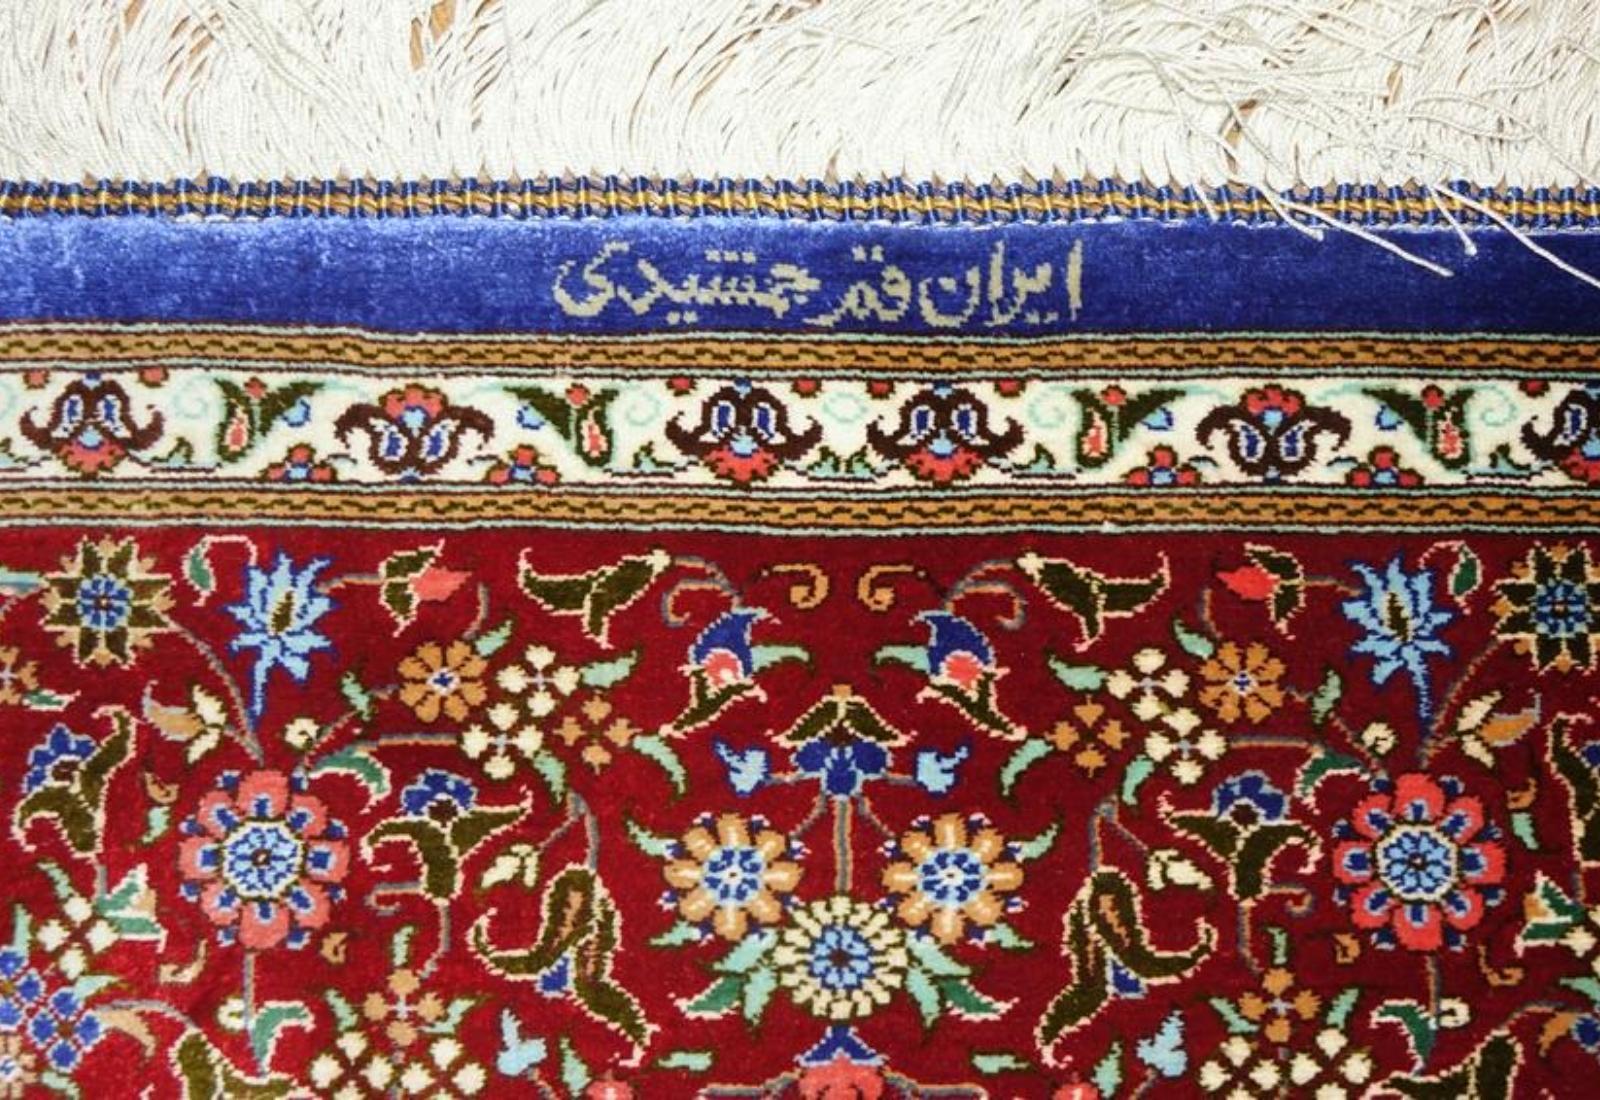 Very fine Persian Silk Qum - 6.5' 4.3' For Sale 1